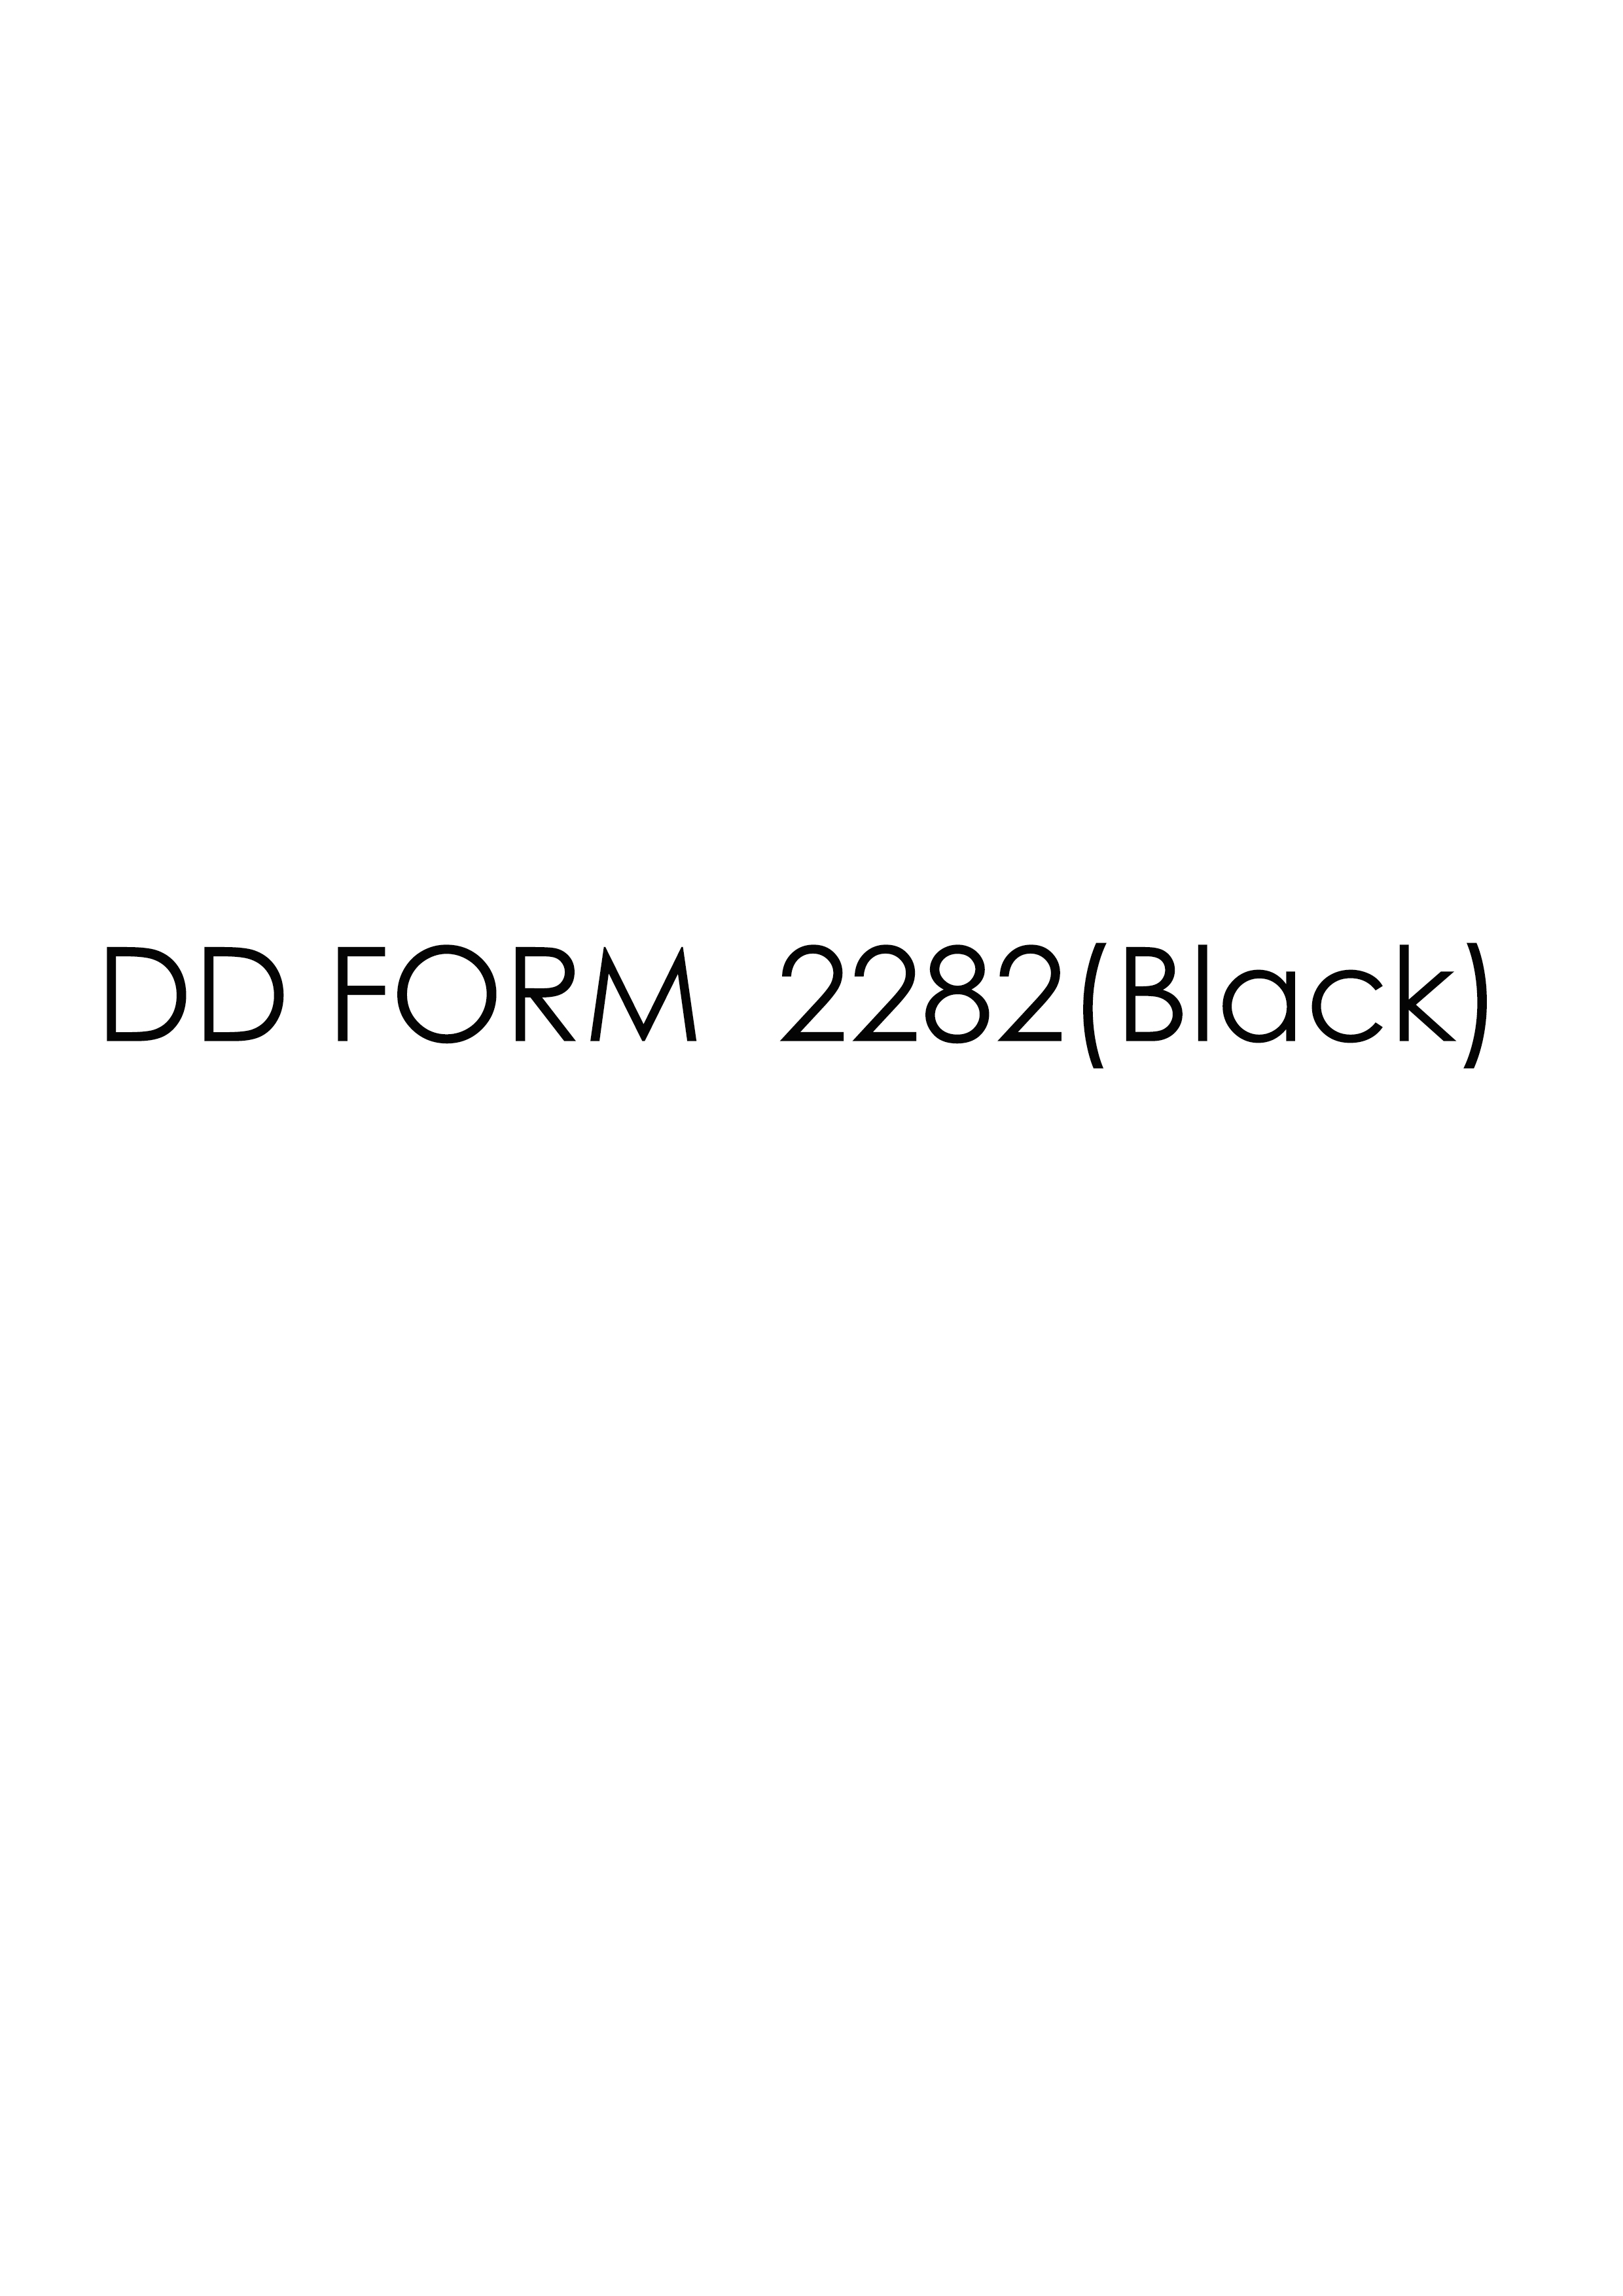 Download Fillable dd Form 2282(Black)